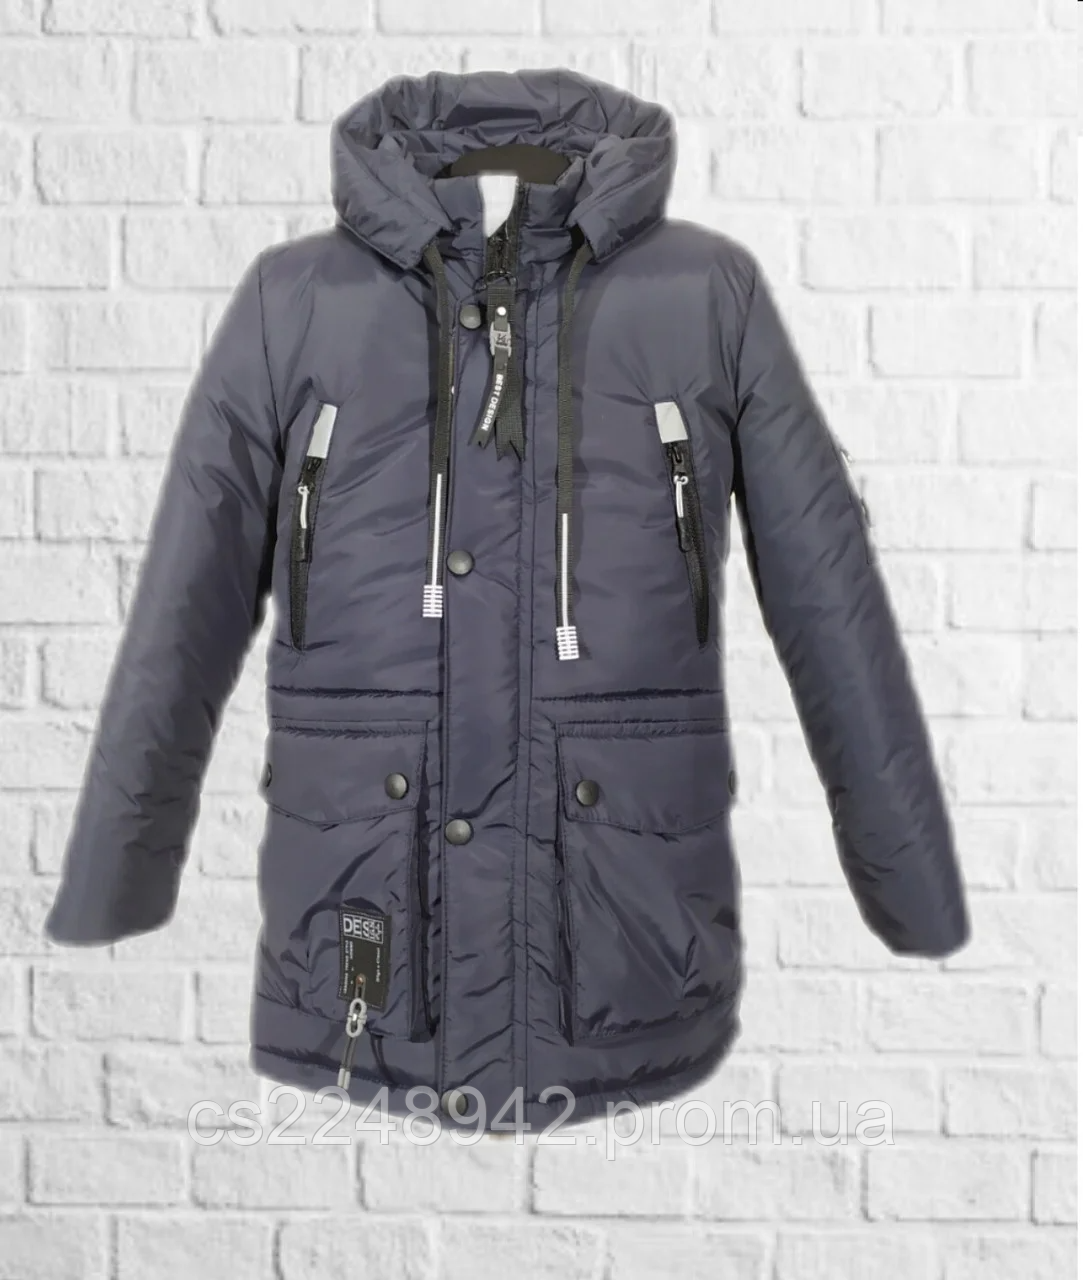 

Зимняя удлиненная куртка для мальчика подростка теплая размеры 34-44, Разные цвета